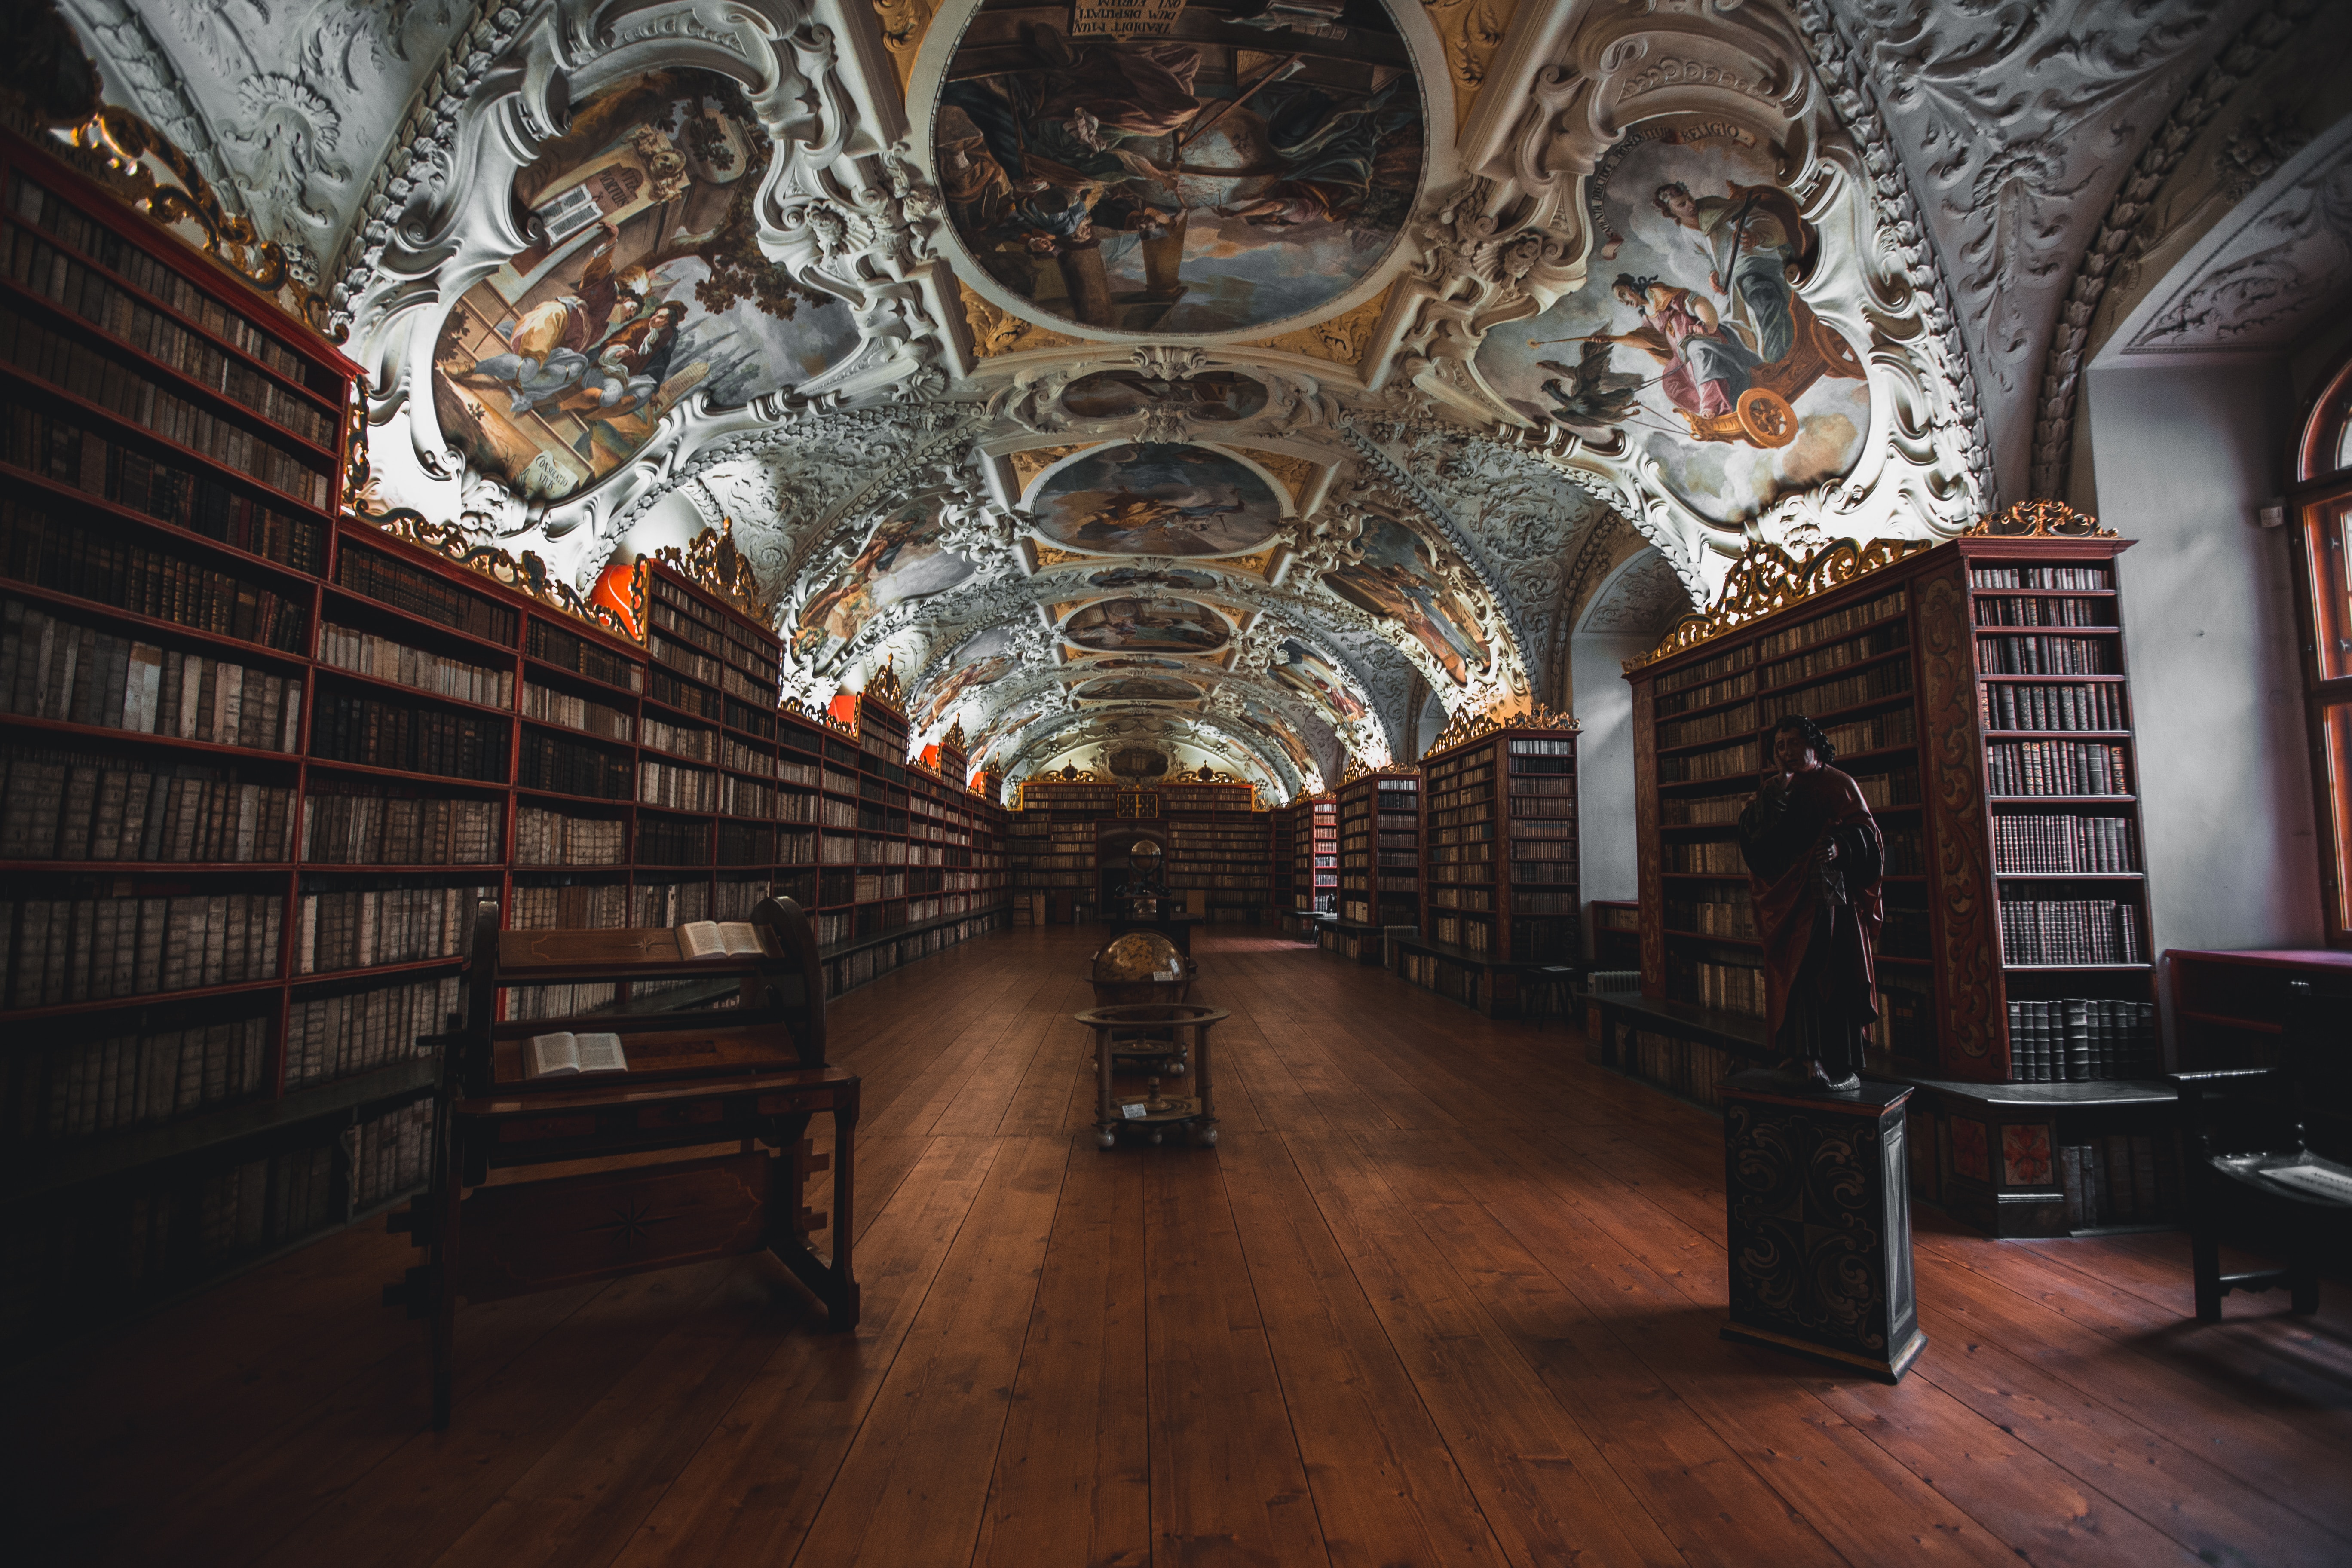 Prague Library